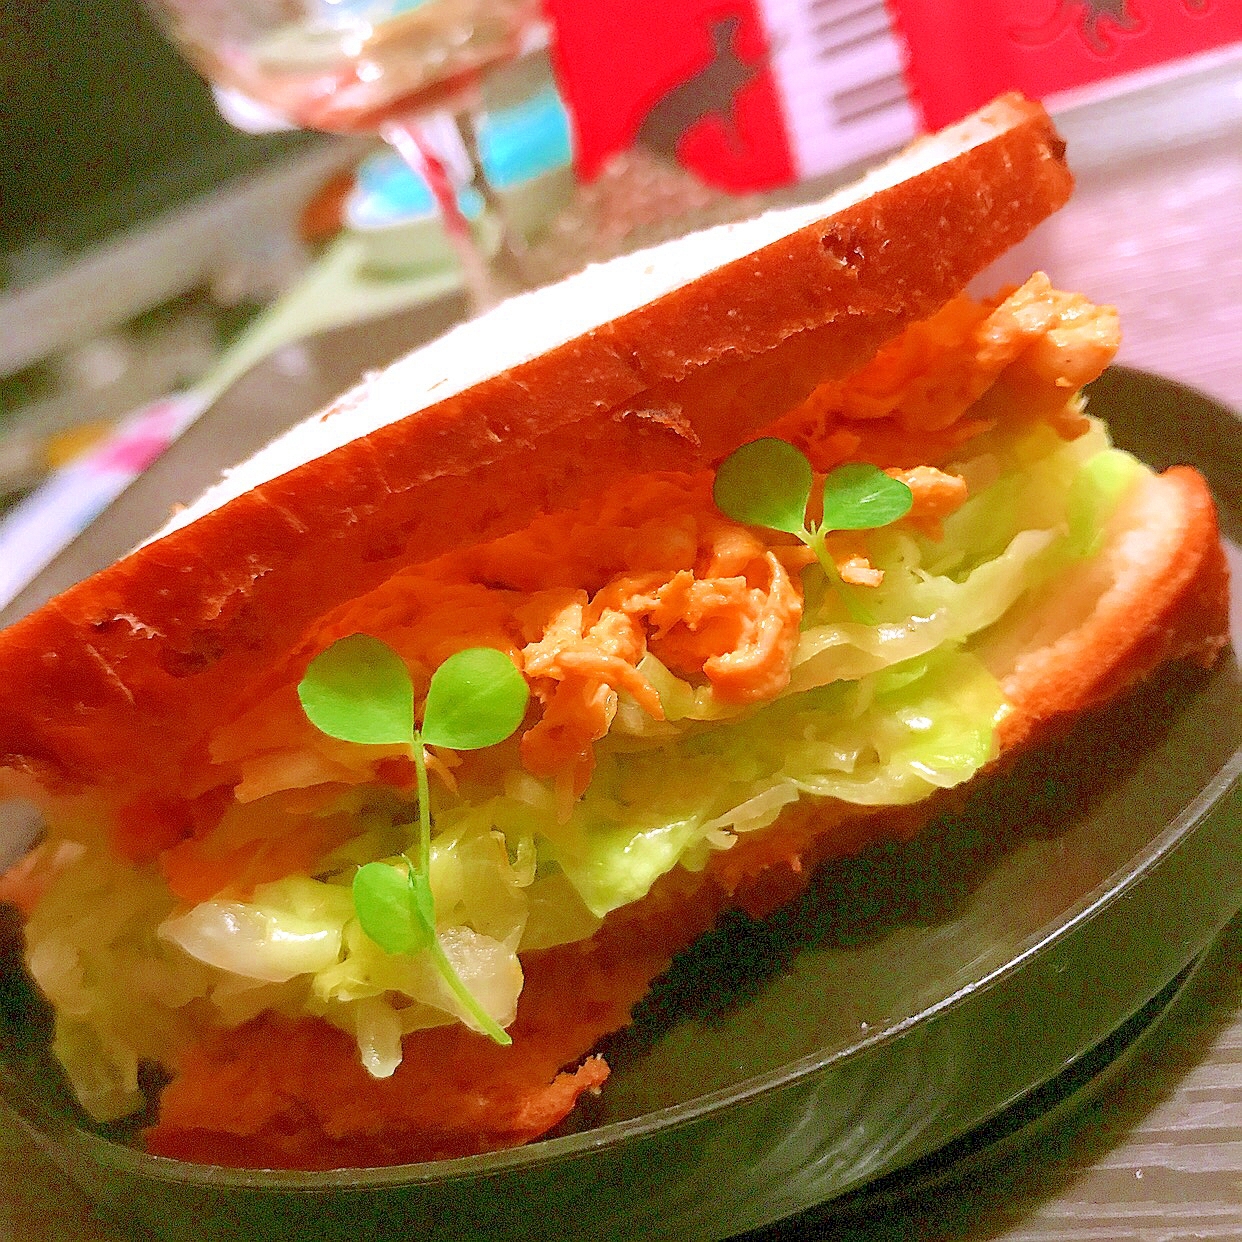 韓国風 鶏ささみと春キャベツの旨辛サンドイッチ